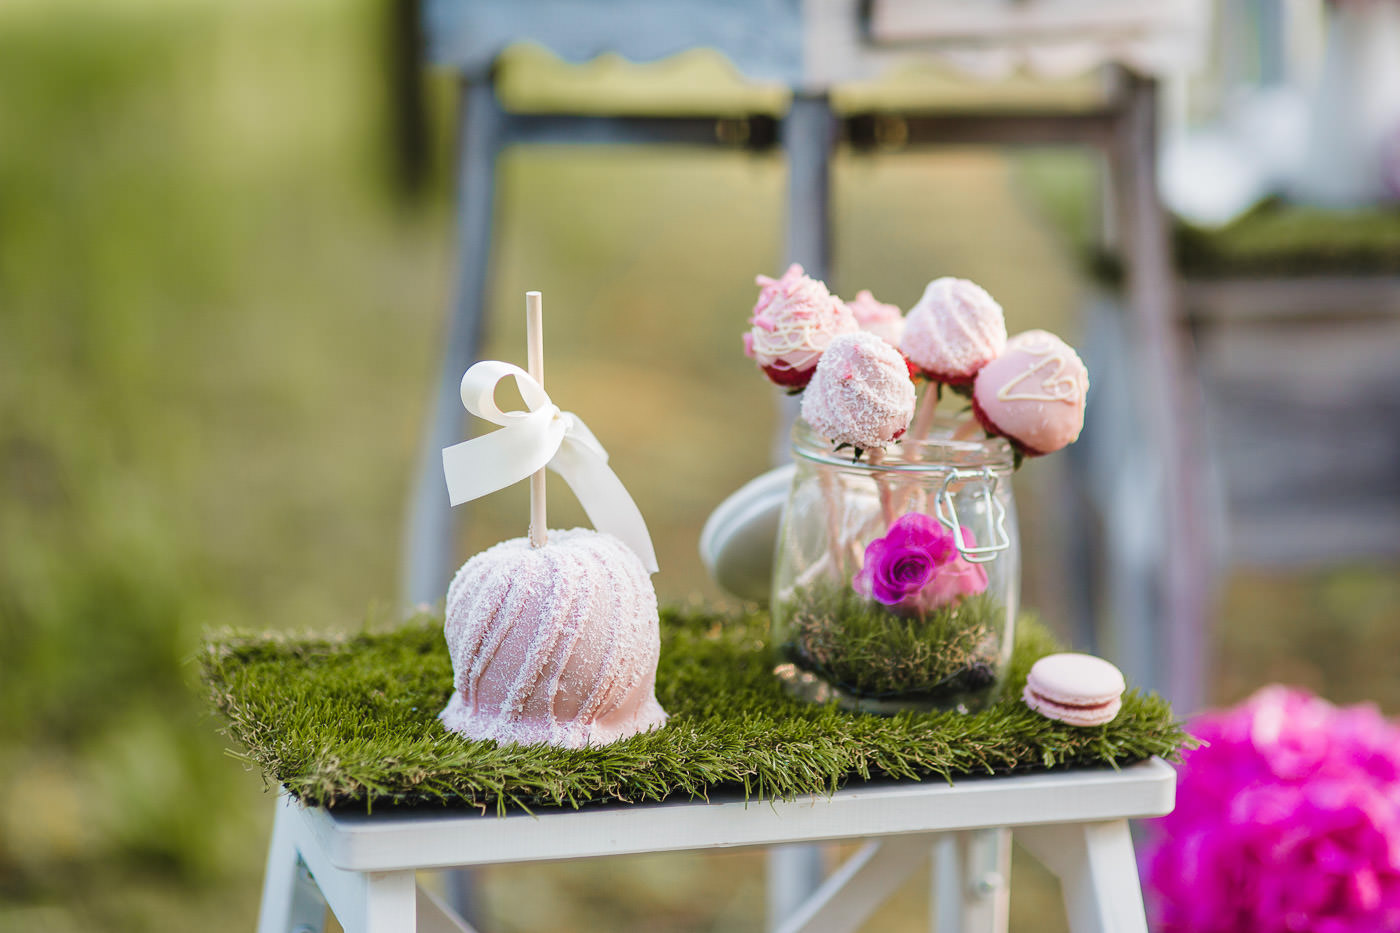 Susan&Sis decor – svadobna vyzdoba, dekorovanie- krasne jarne fotenie v sade – ruzovy candybar, ruze, romanticka vyzdoba